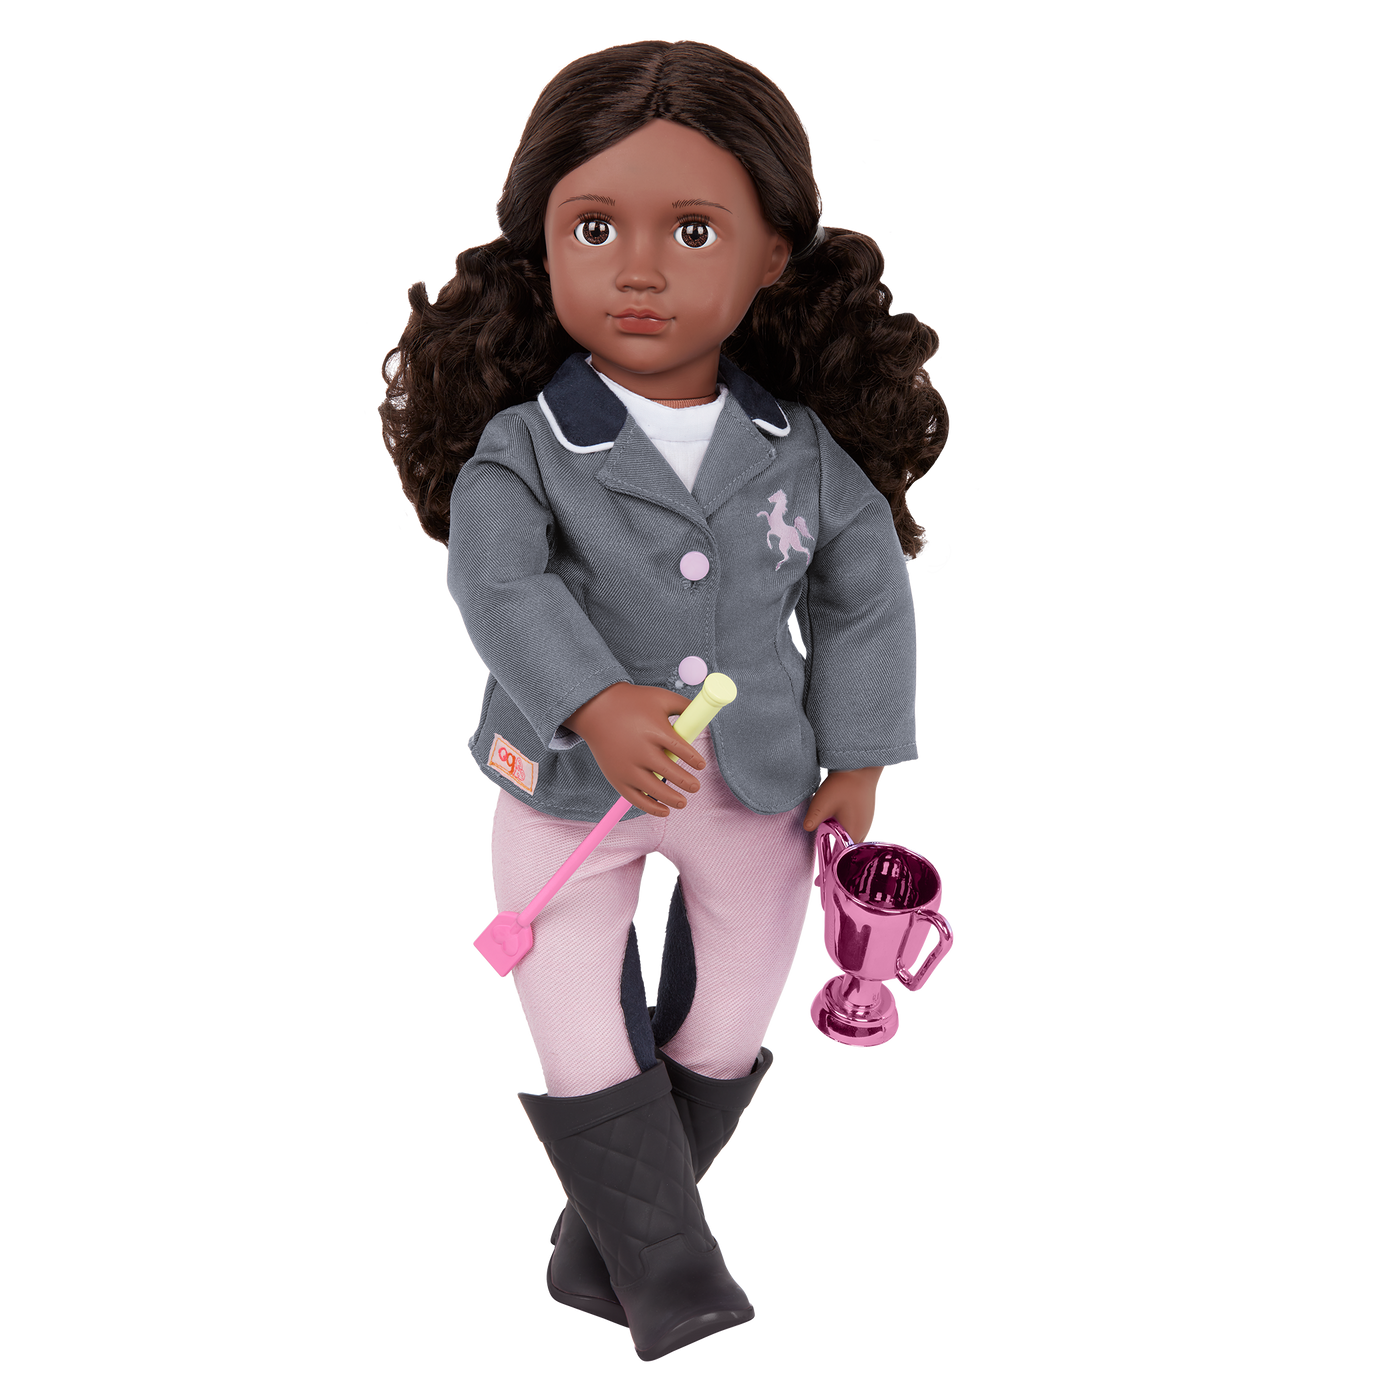 Our Generation Posable 18-inch Equestrian Doll Rashida